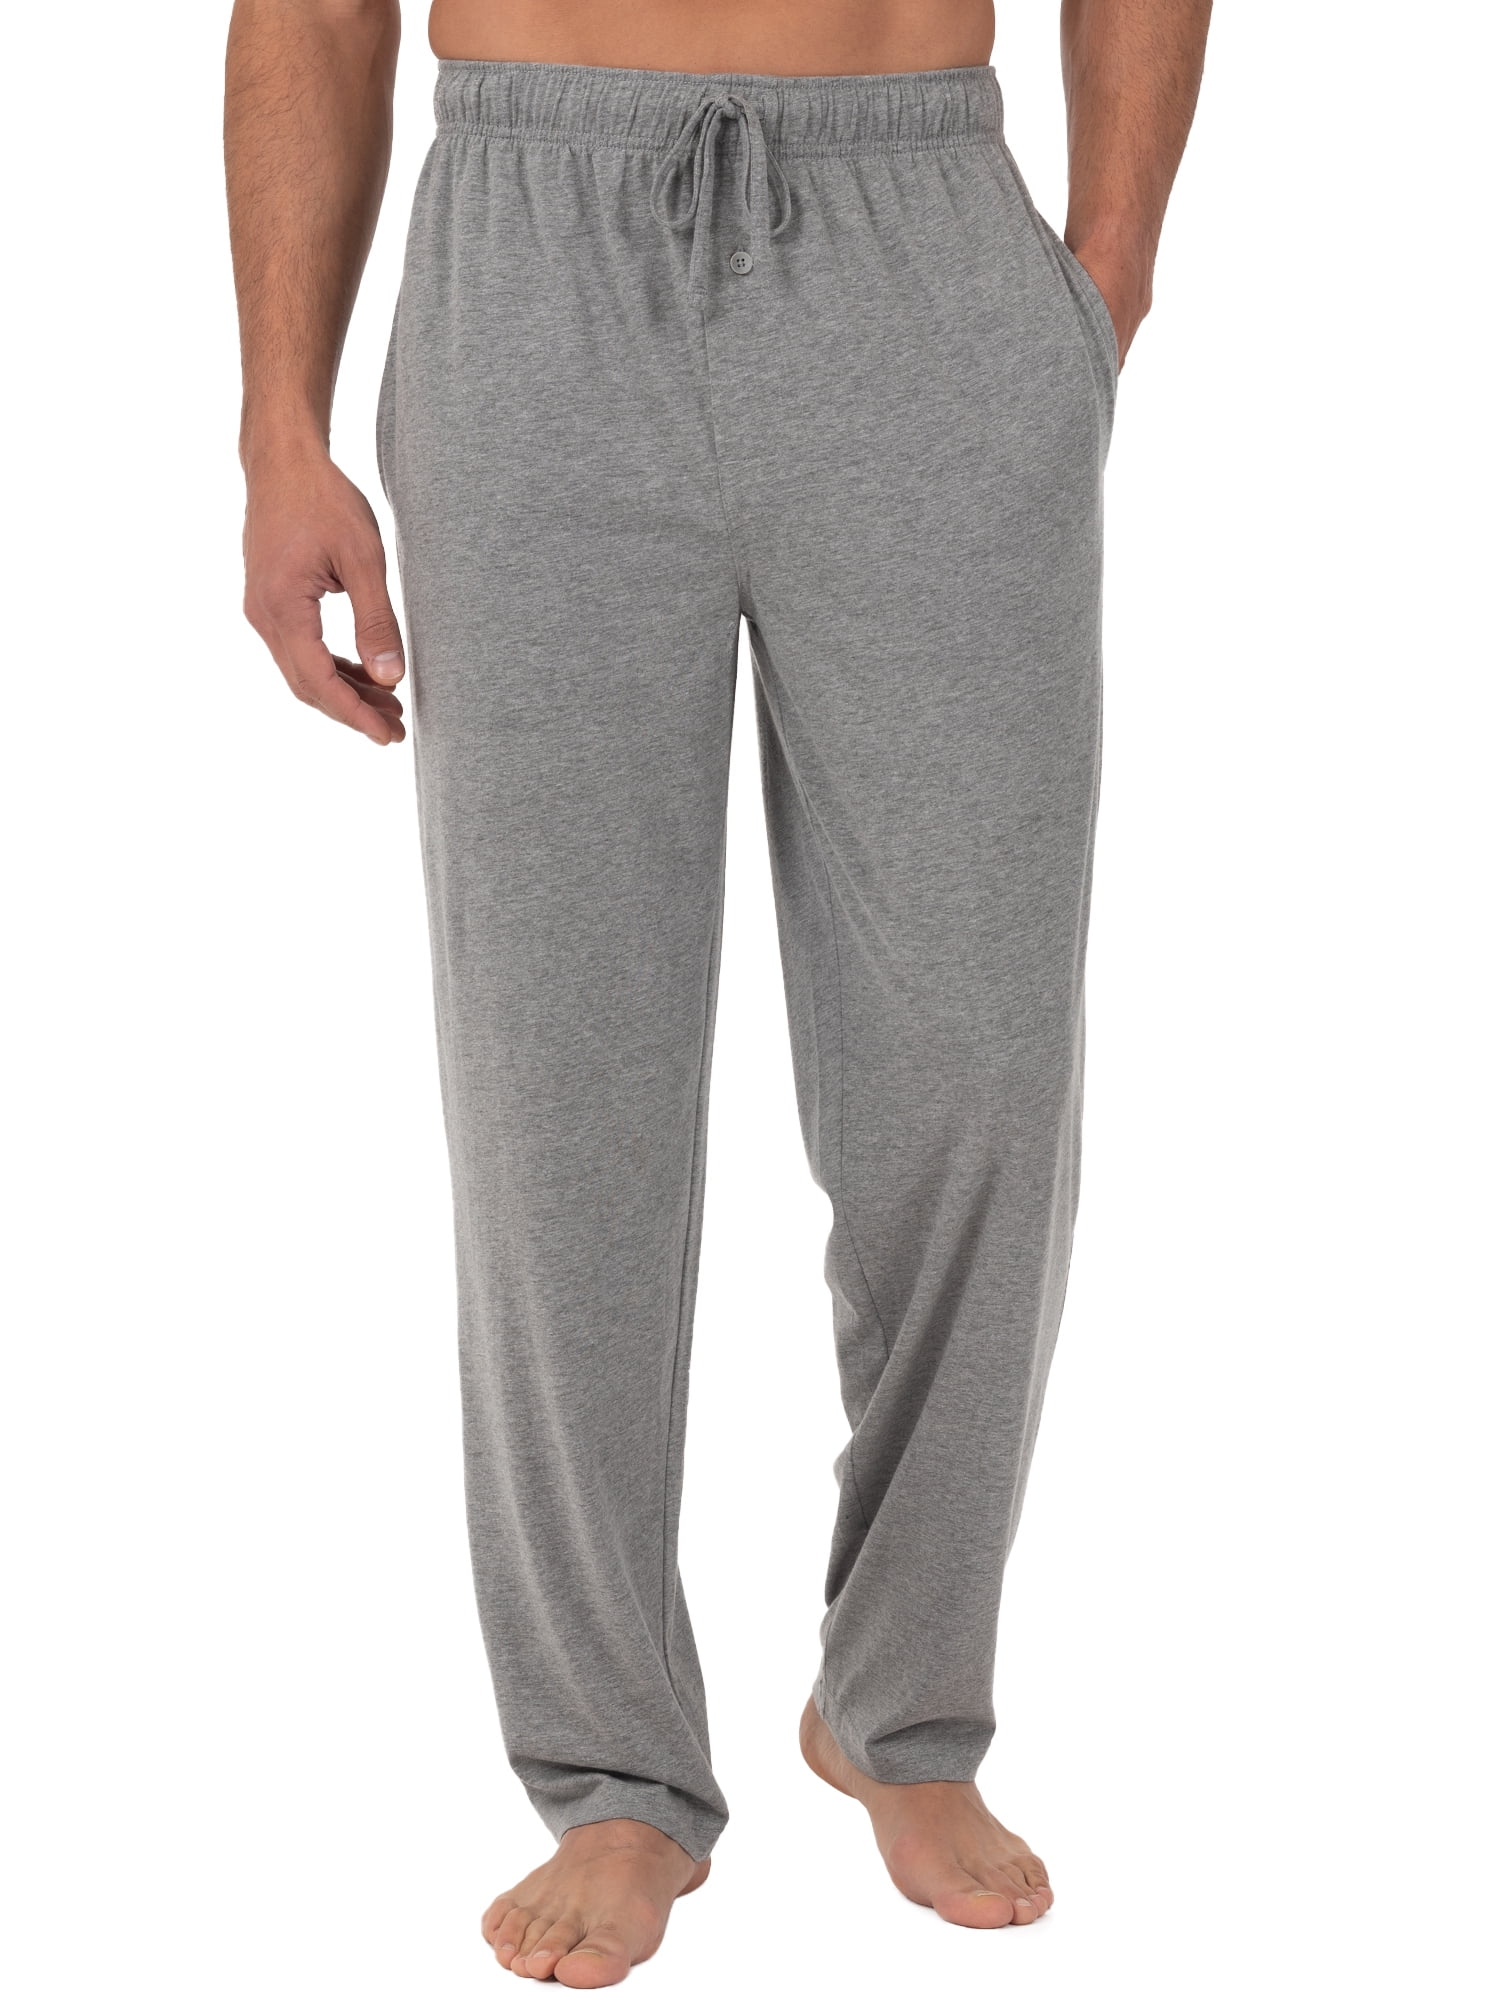 Mens Jersey Cuffed Lounge Pants/Pyjama Bottoms Black/Grey Size M-XXL 